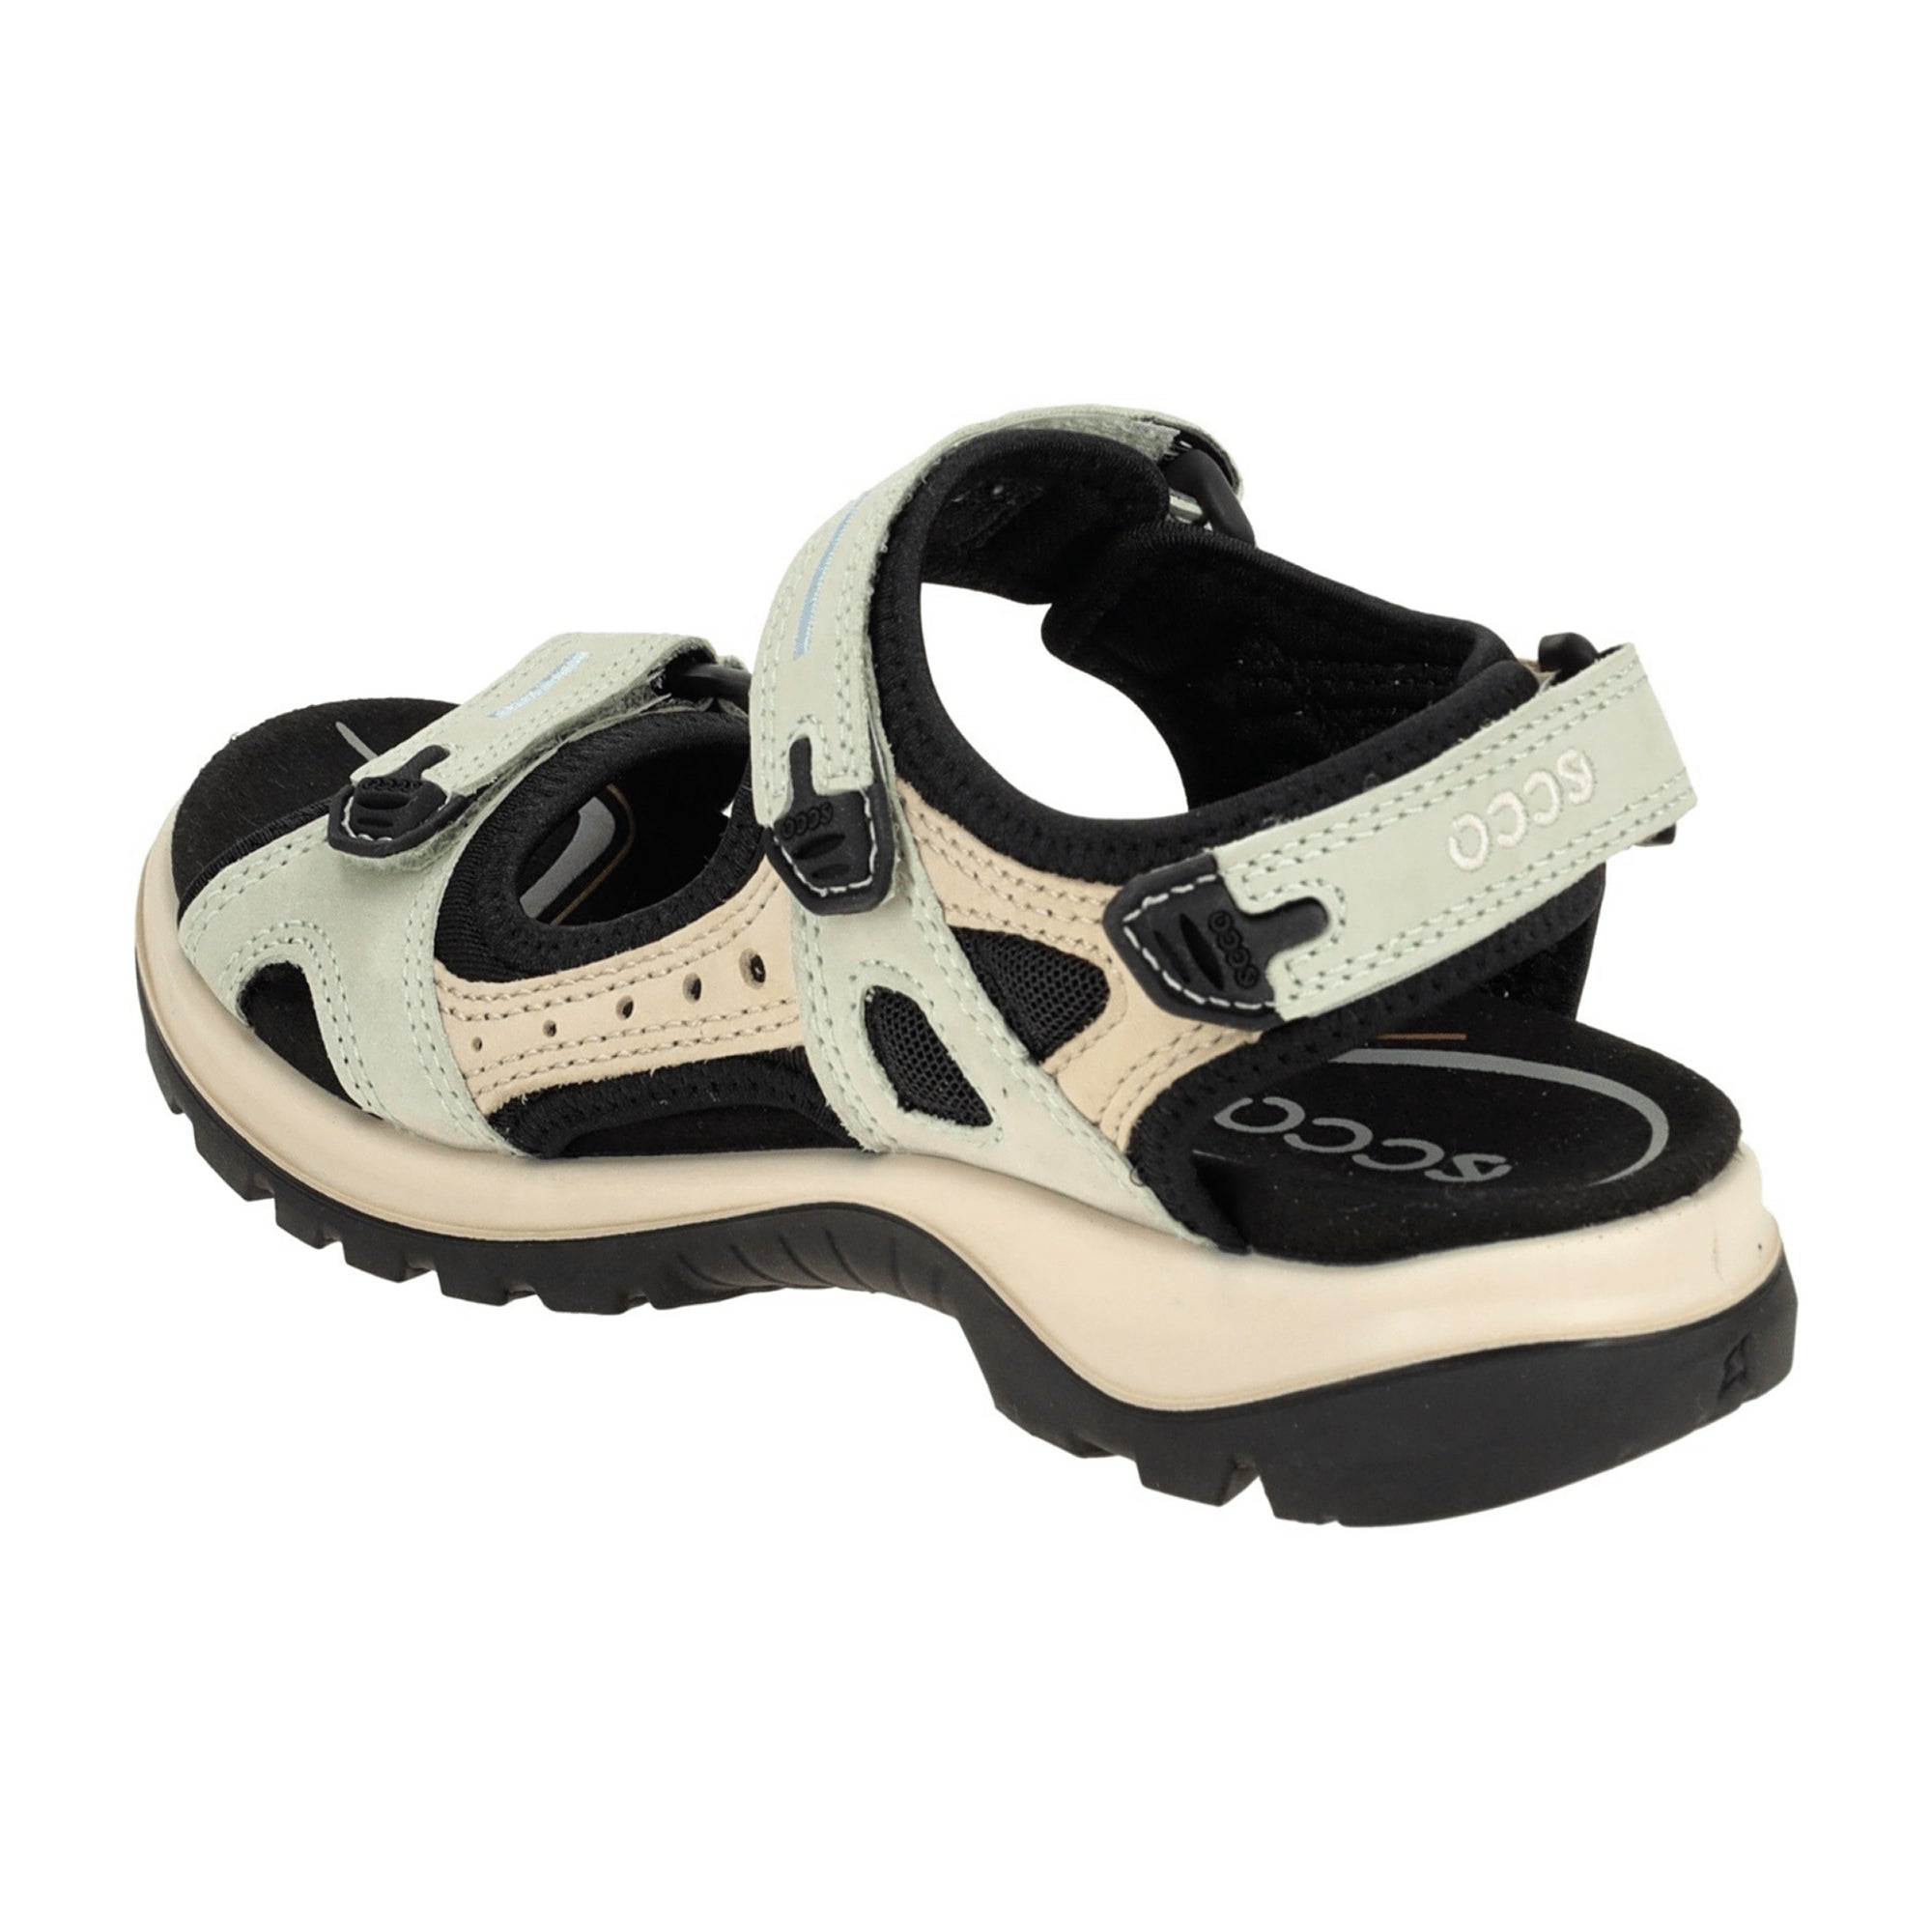 Ecco Women's Offroad Sandals - Durable Outdoor Footwear, Green